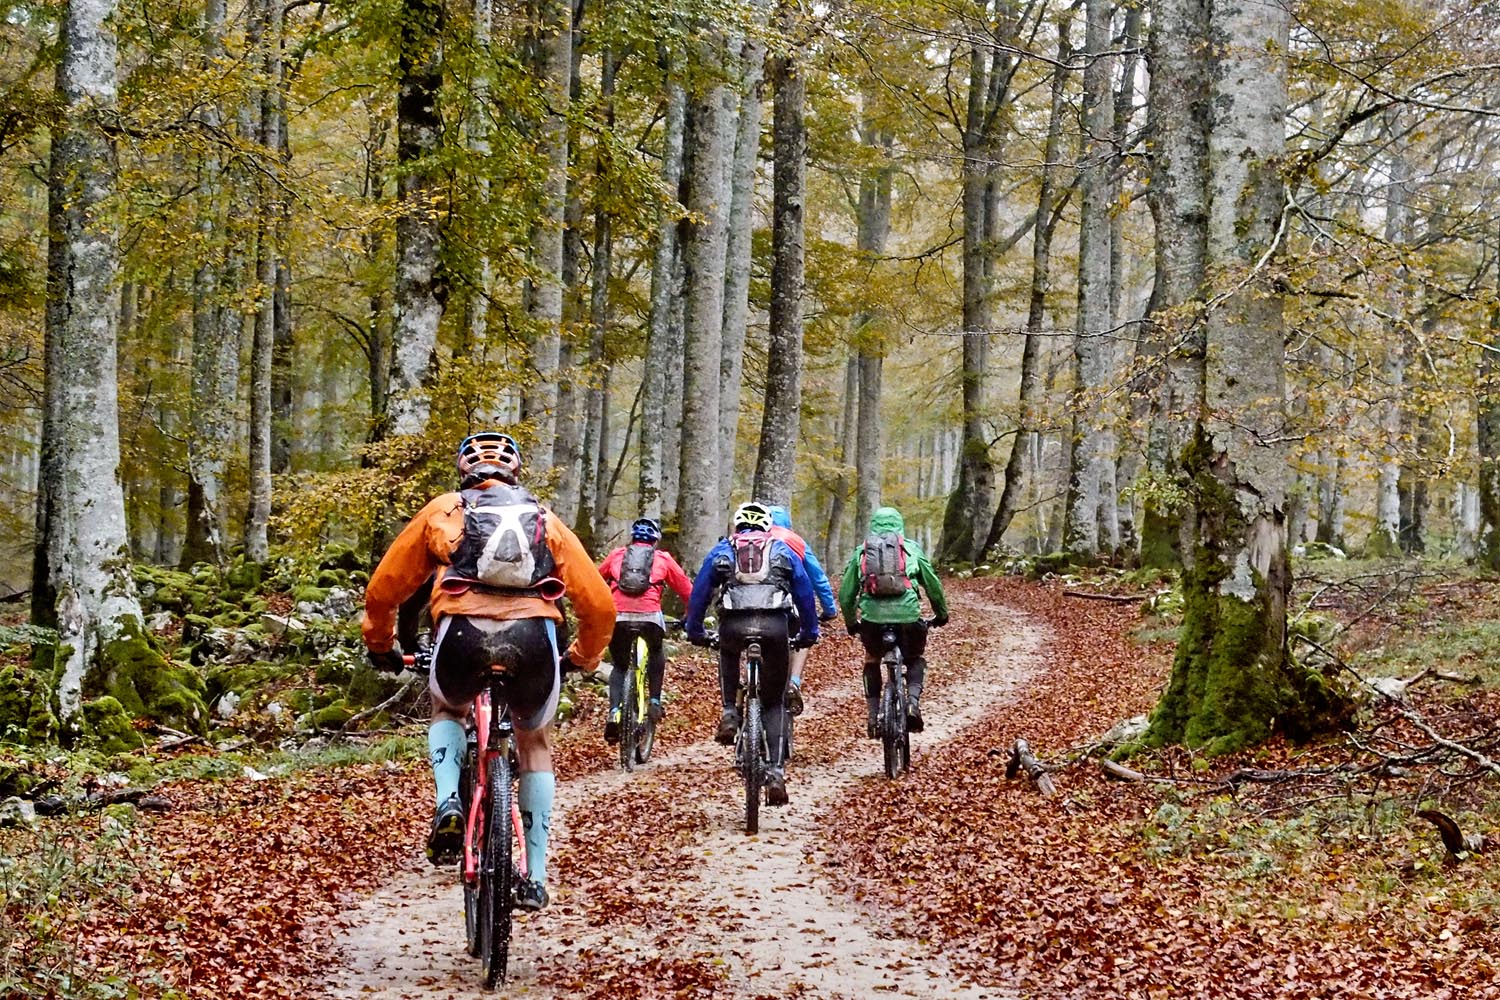 Groupe de cyclistes dans la forêt de hêtres